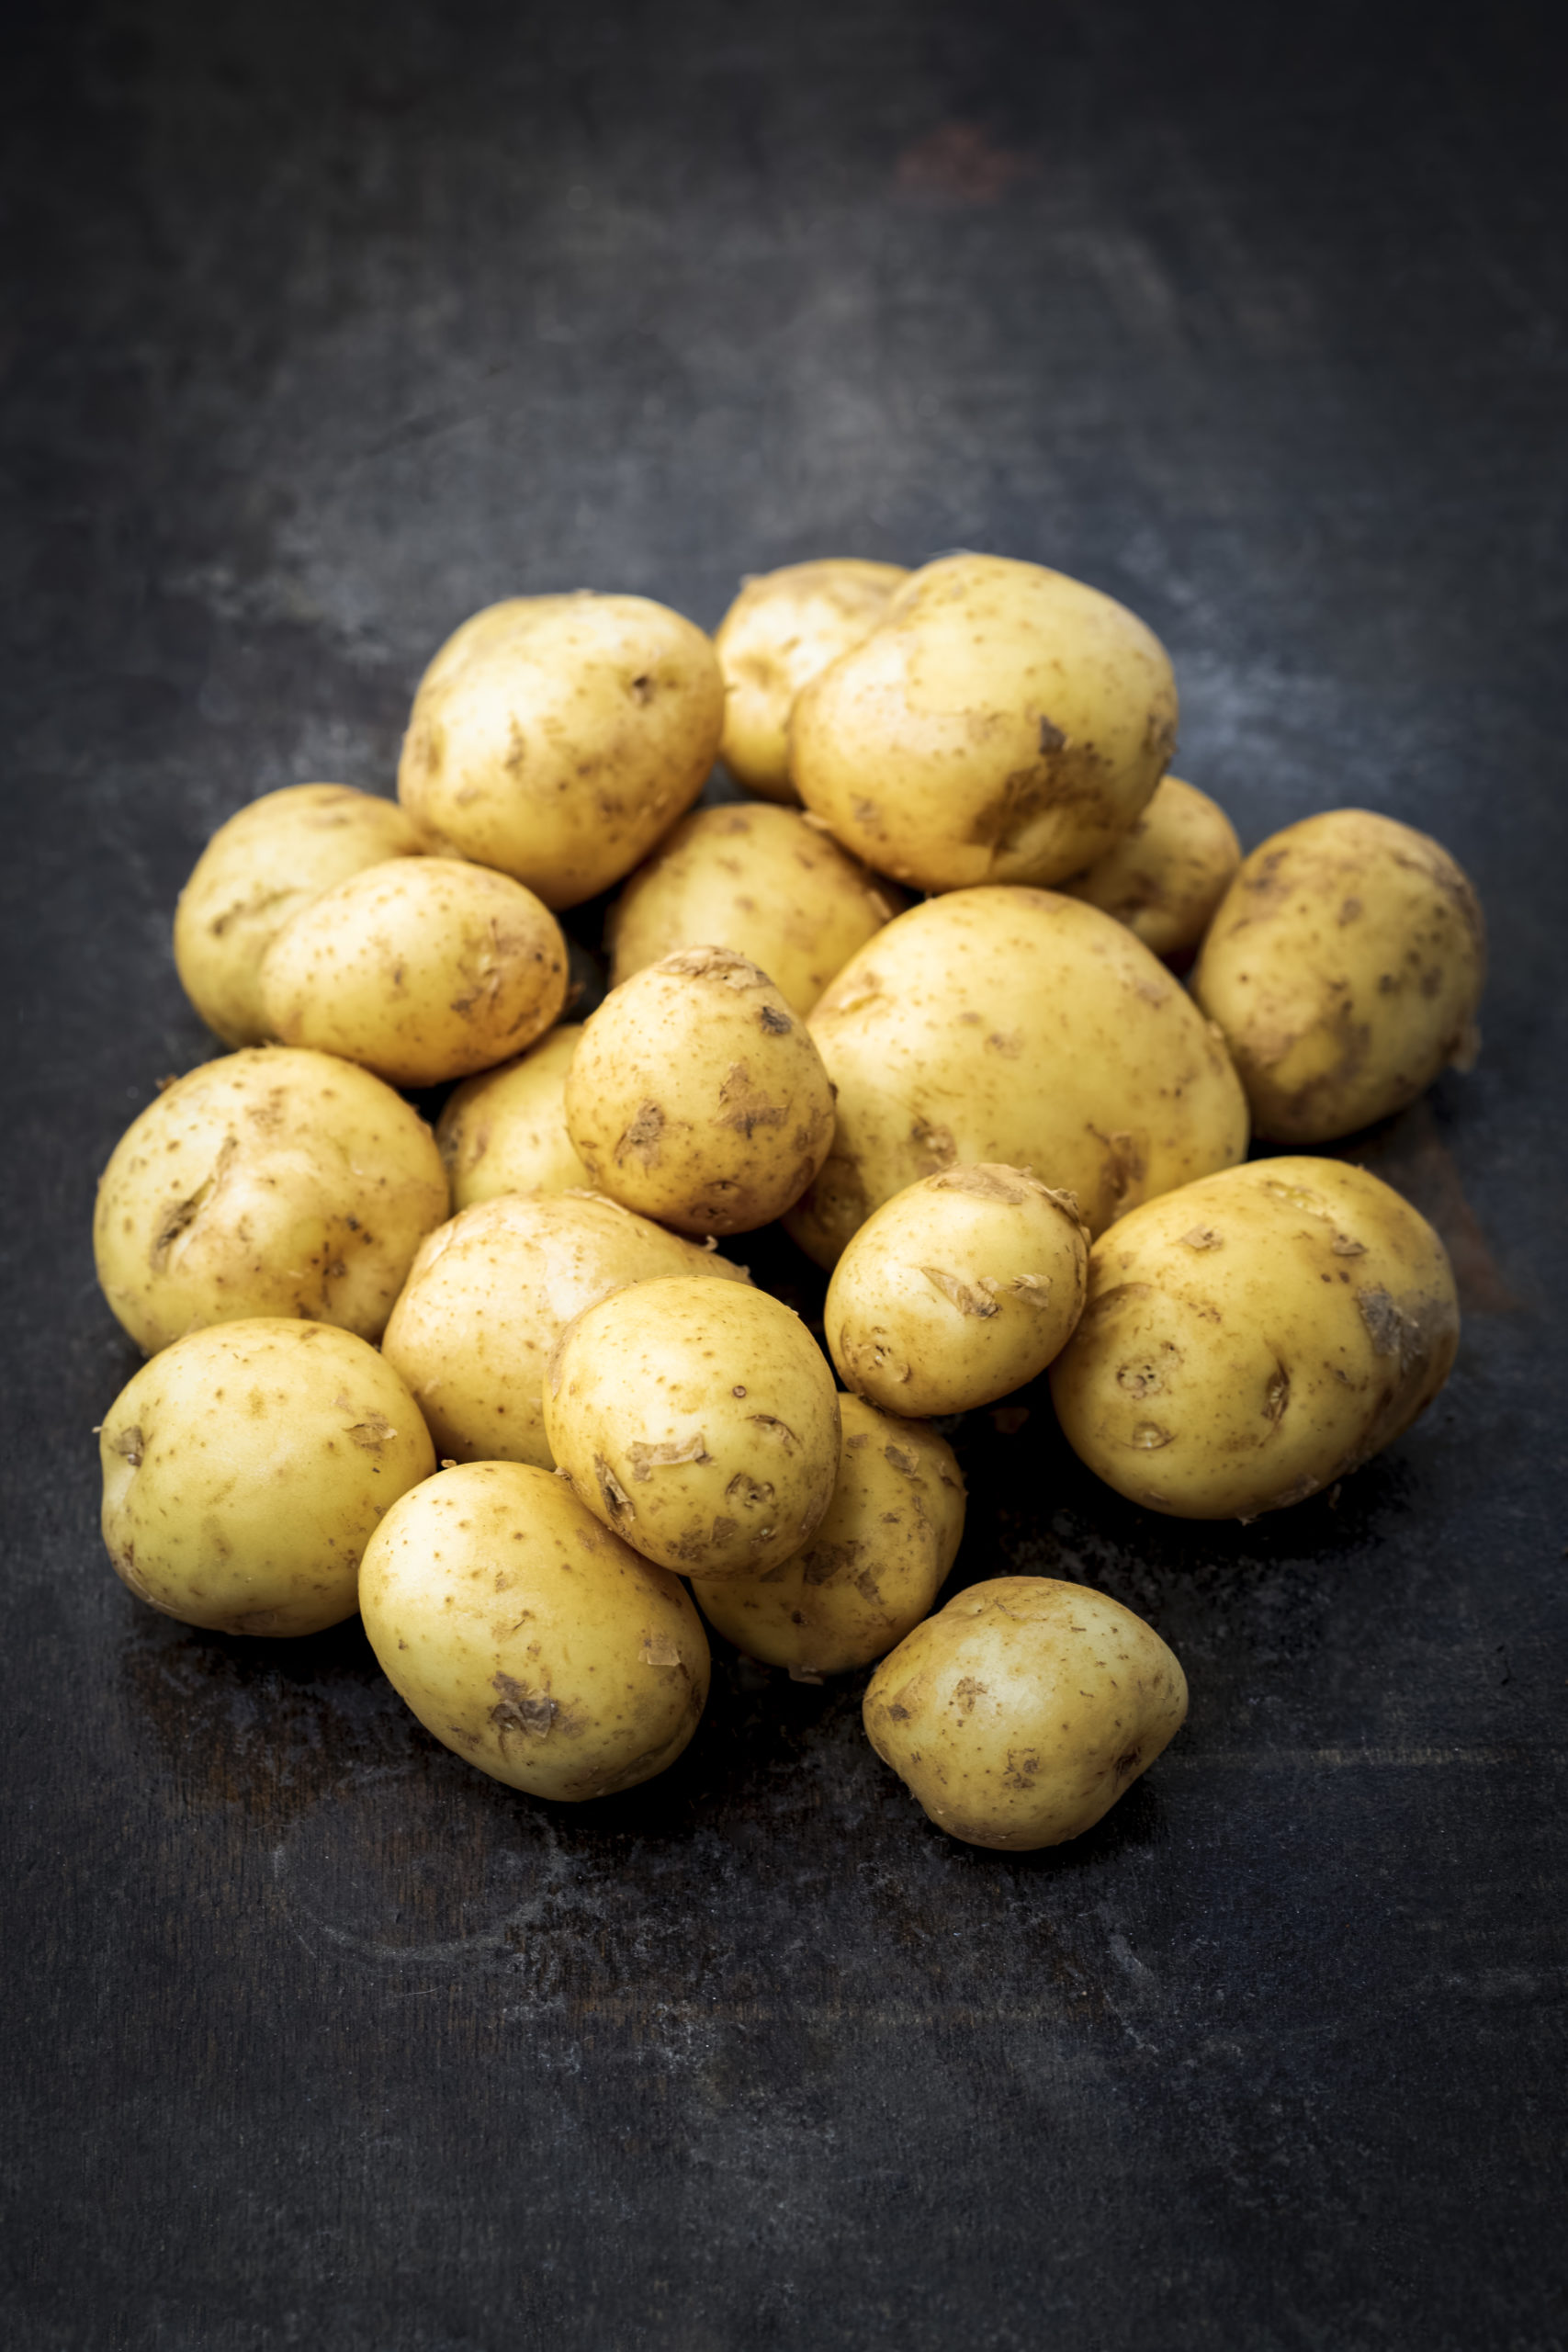 Un plan de communication sur les pommes de terre de primeur a dépassé les attentes